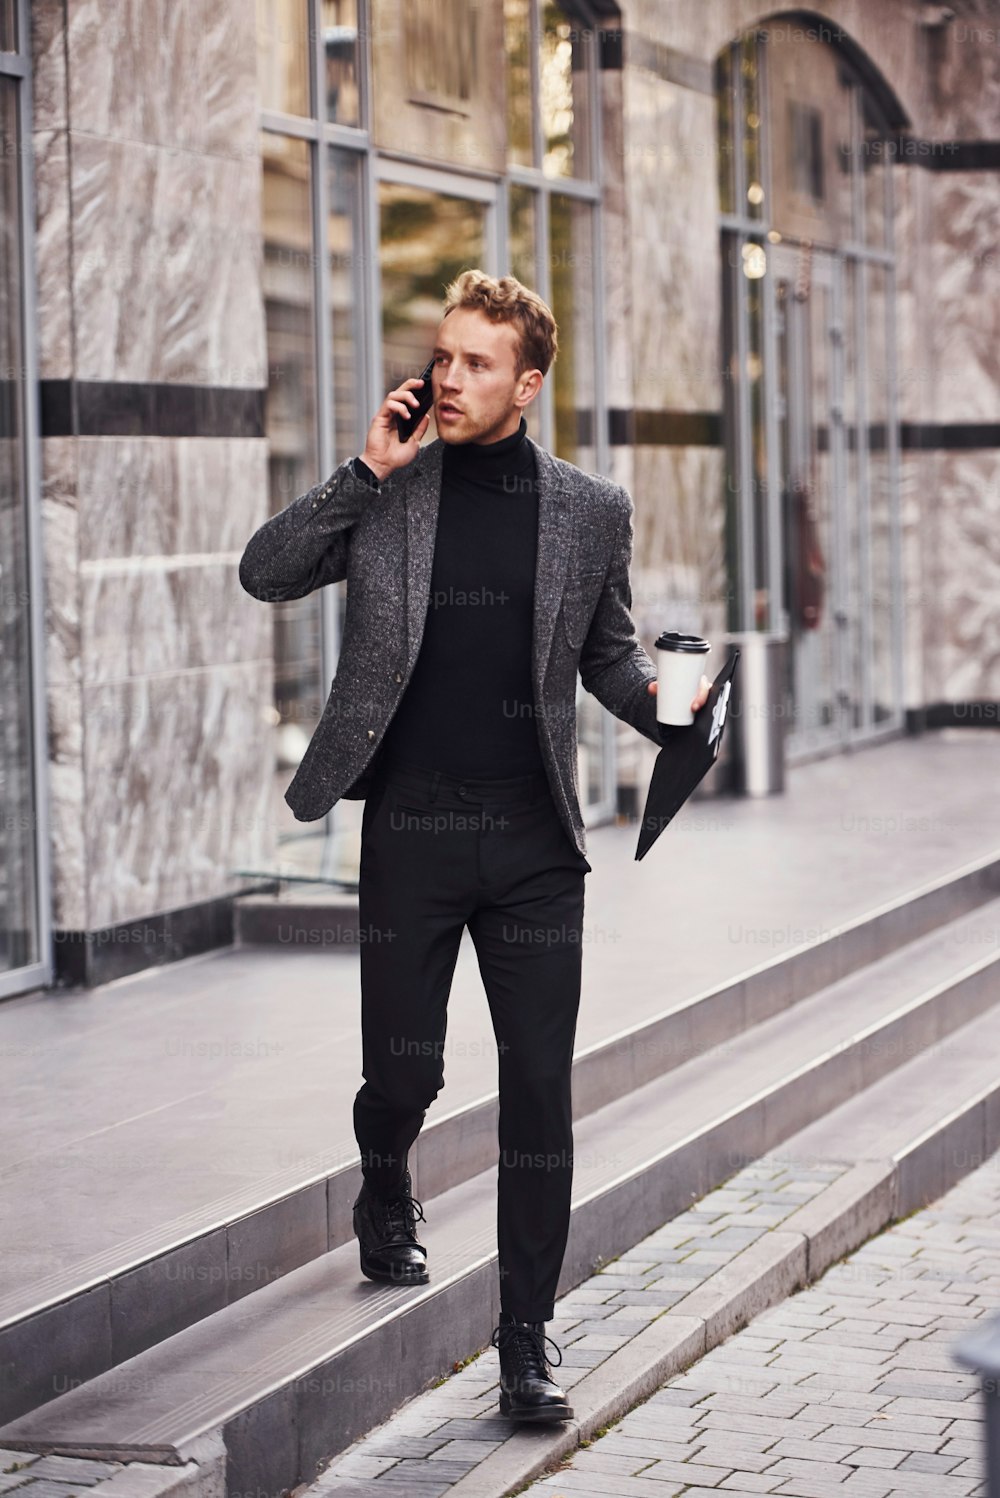 우아한 정장을 입고 음료수 한 잔과 메모장을 손에 들고 있는 남자는 현대적인 건물에 맞서 전화로 대화를 나눕니다.